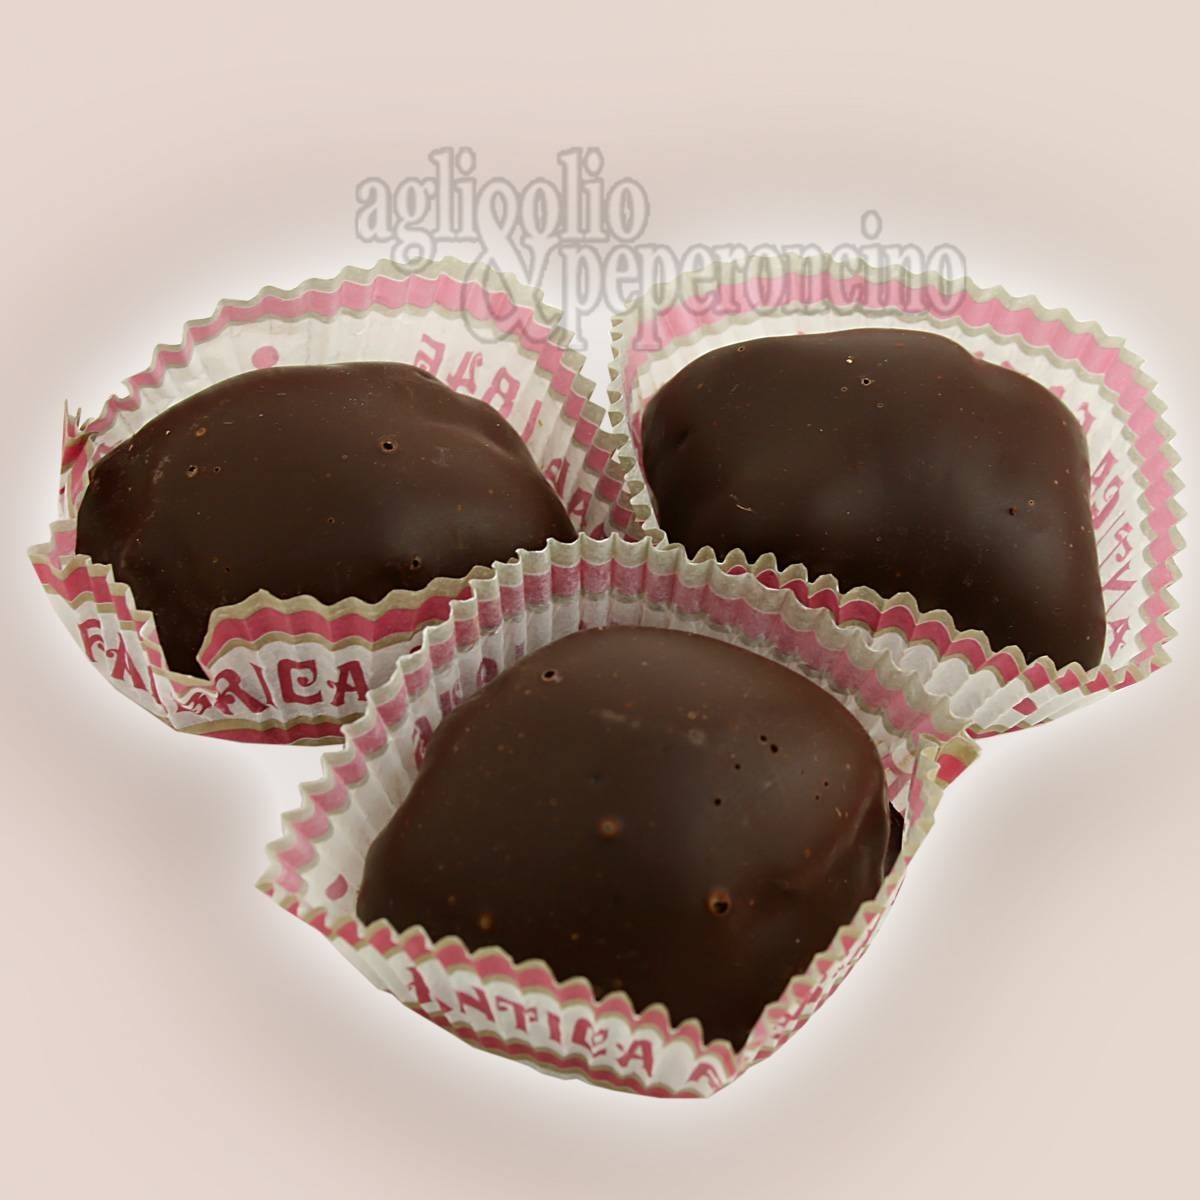 Mustaccioli - Biscotti ripieni ricoperti al cioccolato- Cardone dal 1846